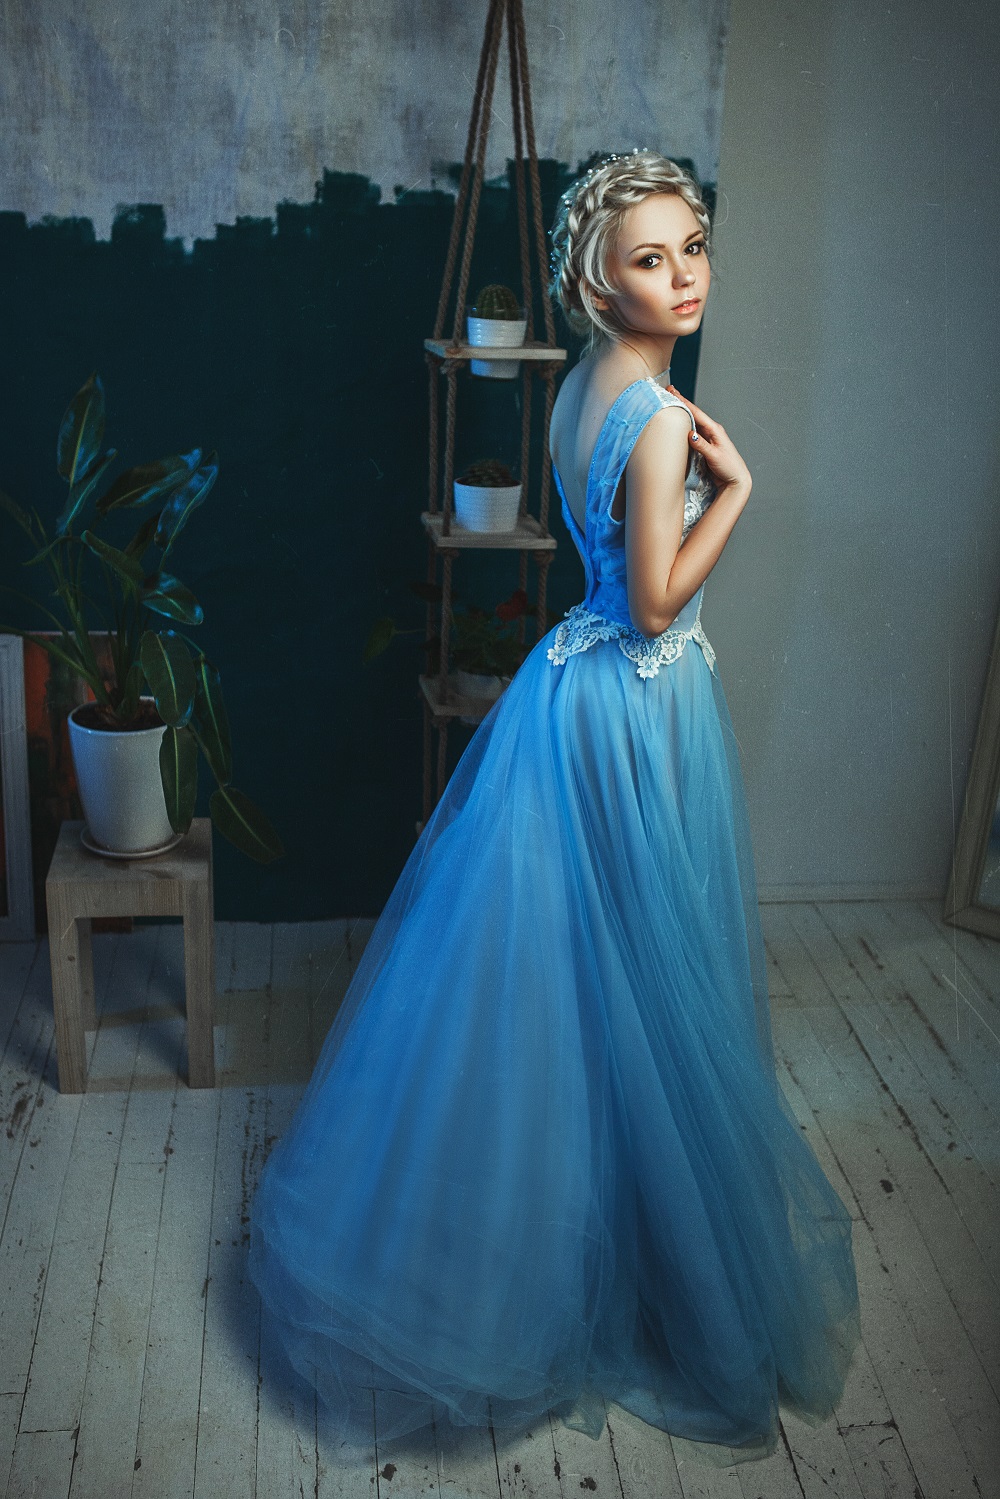 Kolorowe suknie ślubne. Śliczna dziewczyna w niebieskiej delikatnej sukni księżniczce.